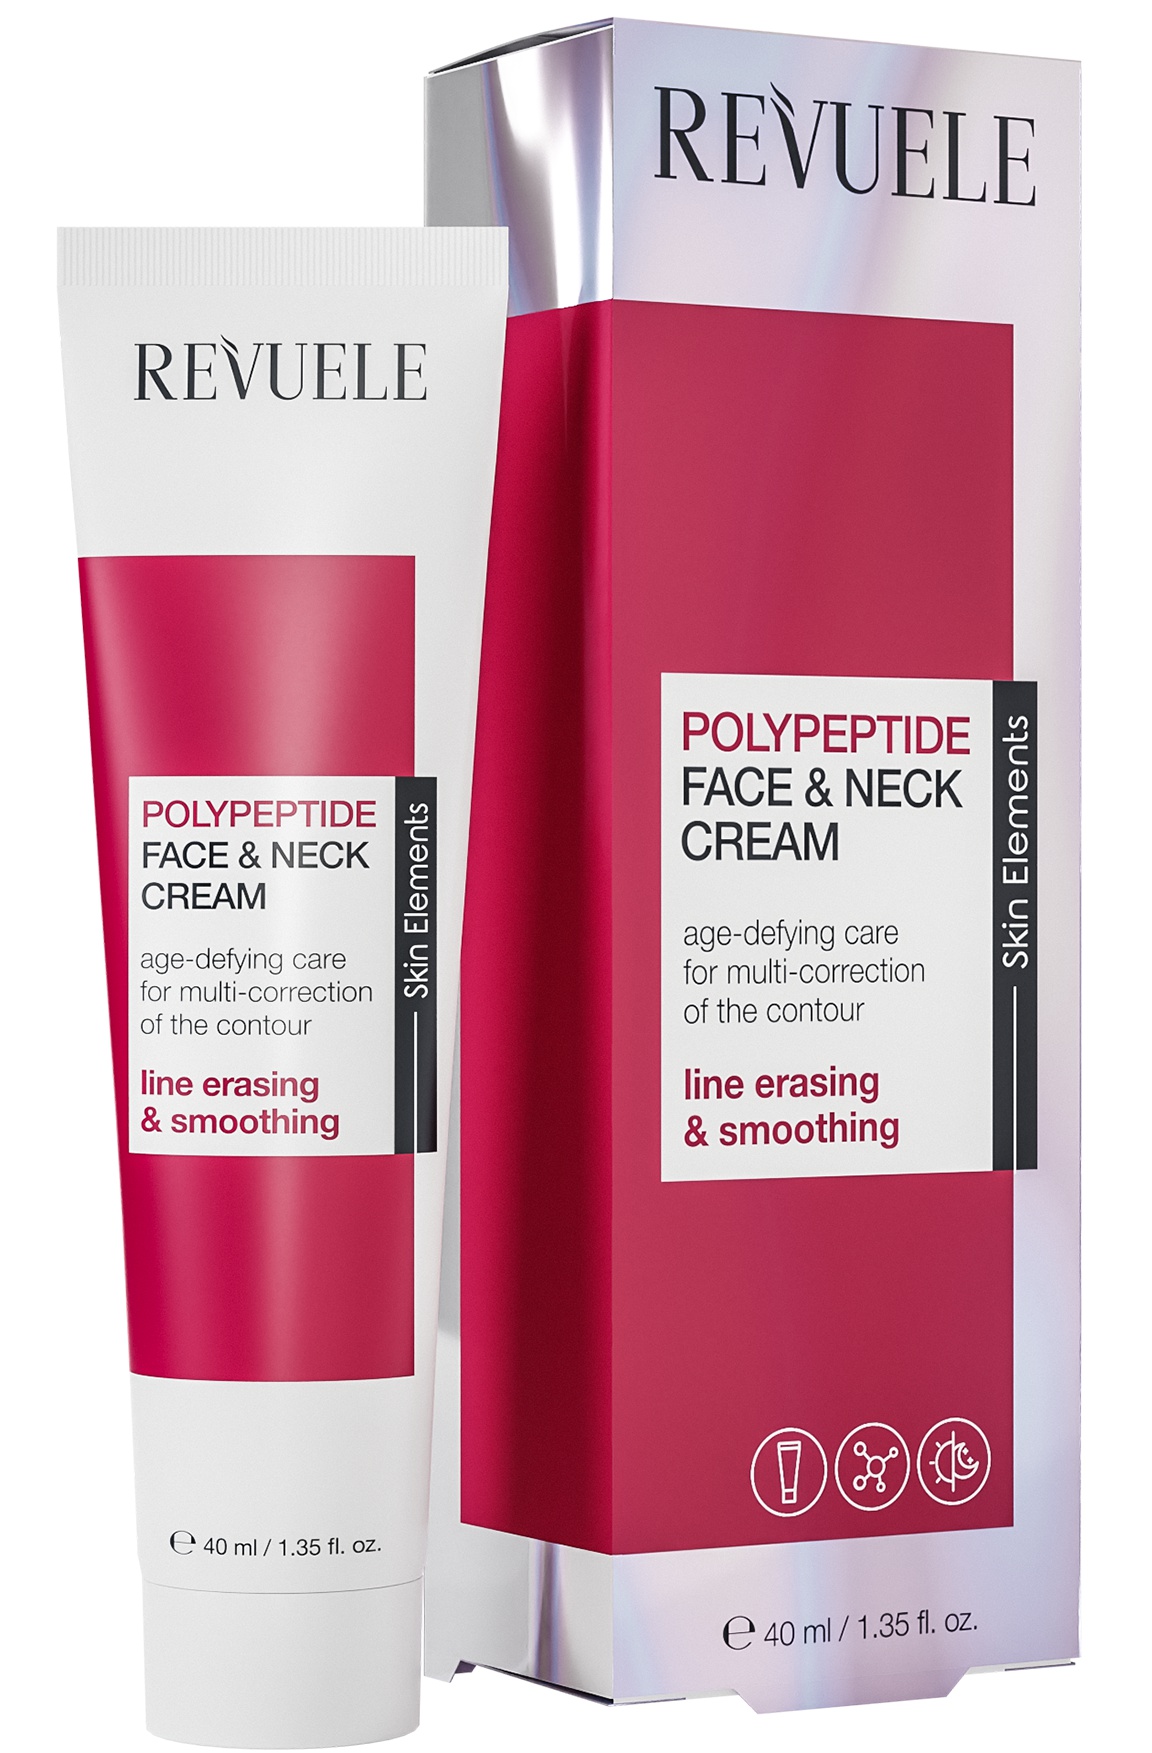 Revuele Polypeptide Face & Neck Cream